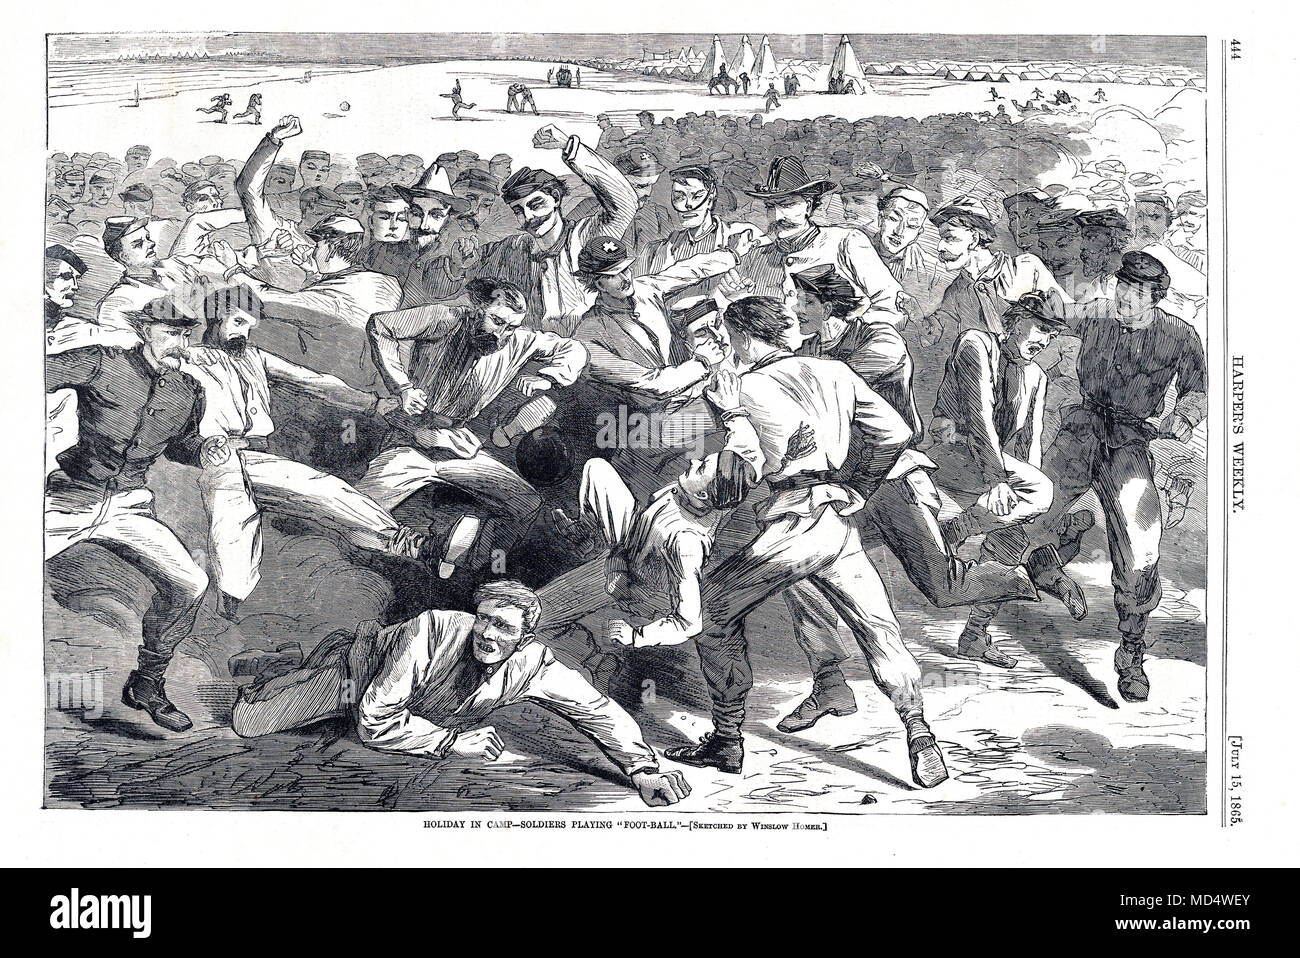 Mob nous Football, 1865 gravure à Harpers Weekly de soldats au camp de jouer un jeu de football, un précurseur du rugby, football américain et de soccer avec apparemment peu d'organisation et peu de règles Banque D'Images